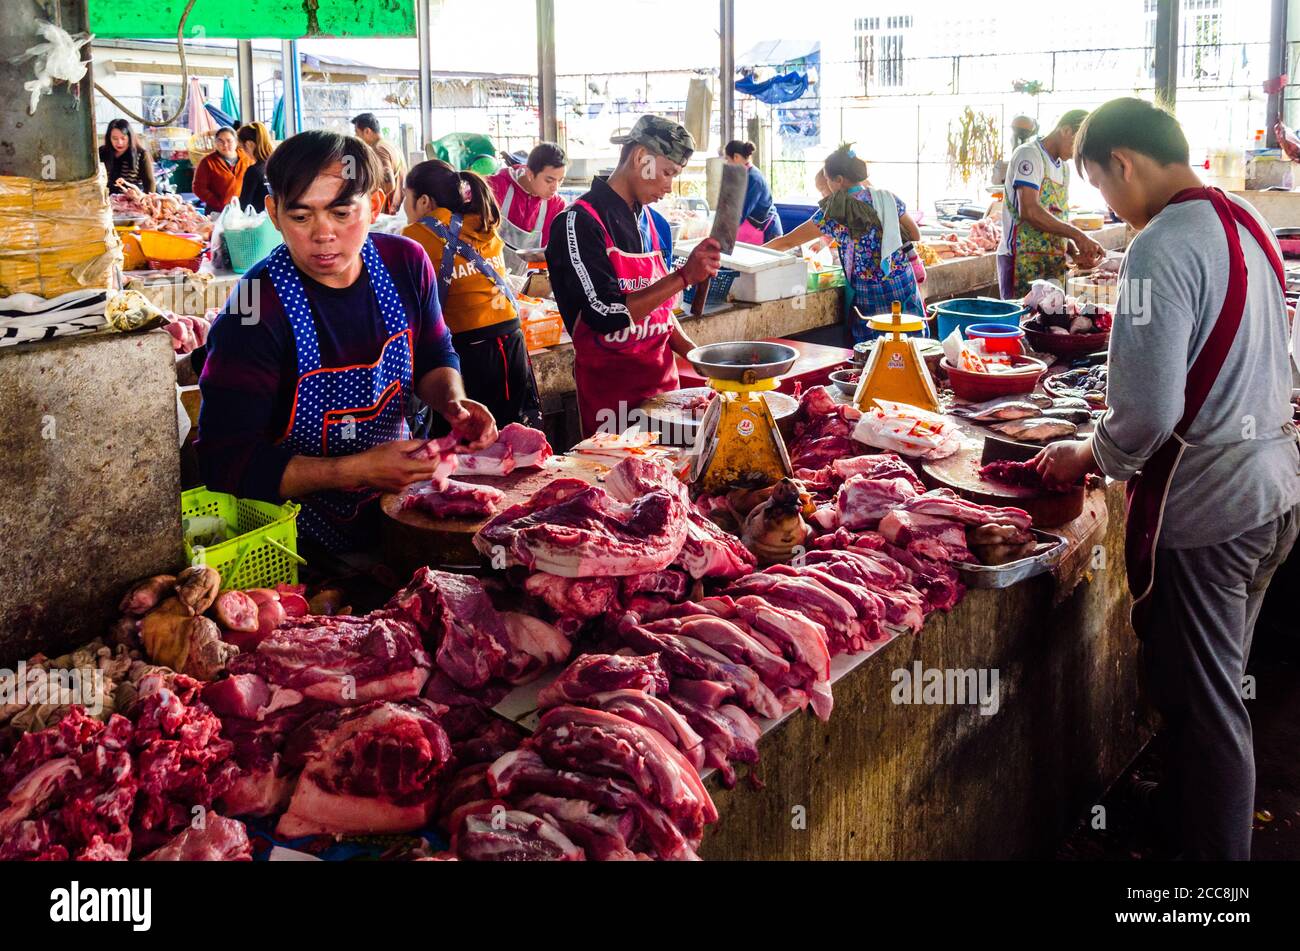 Tachileik, Myanmar - 8 febbraio 2019: Commercianti maschi nel loro stand che vendono carne nel mercato umido in Myanmar. Gli uomini offrono carne rossa. Foto Stock